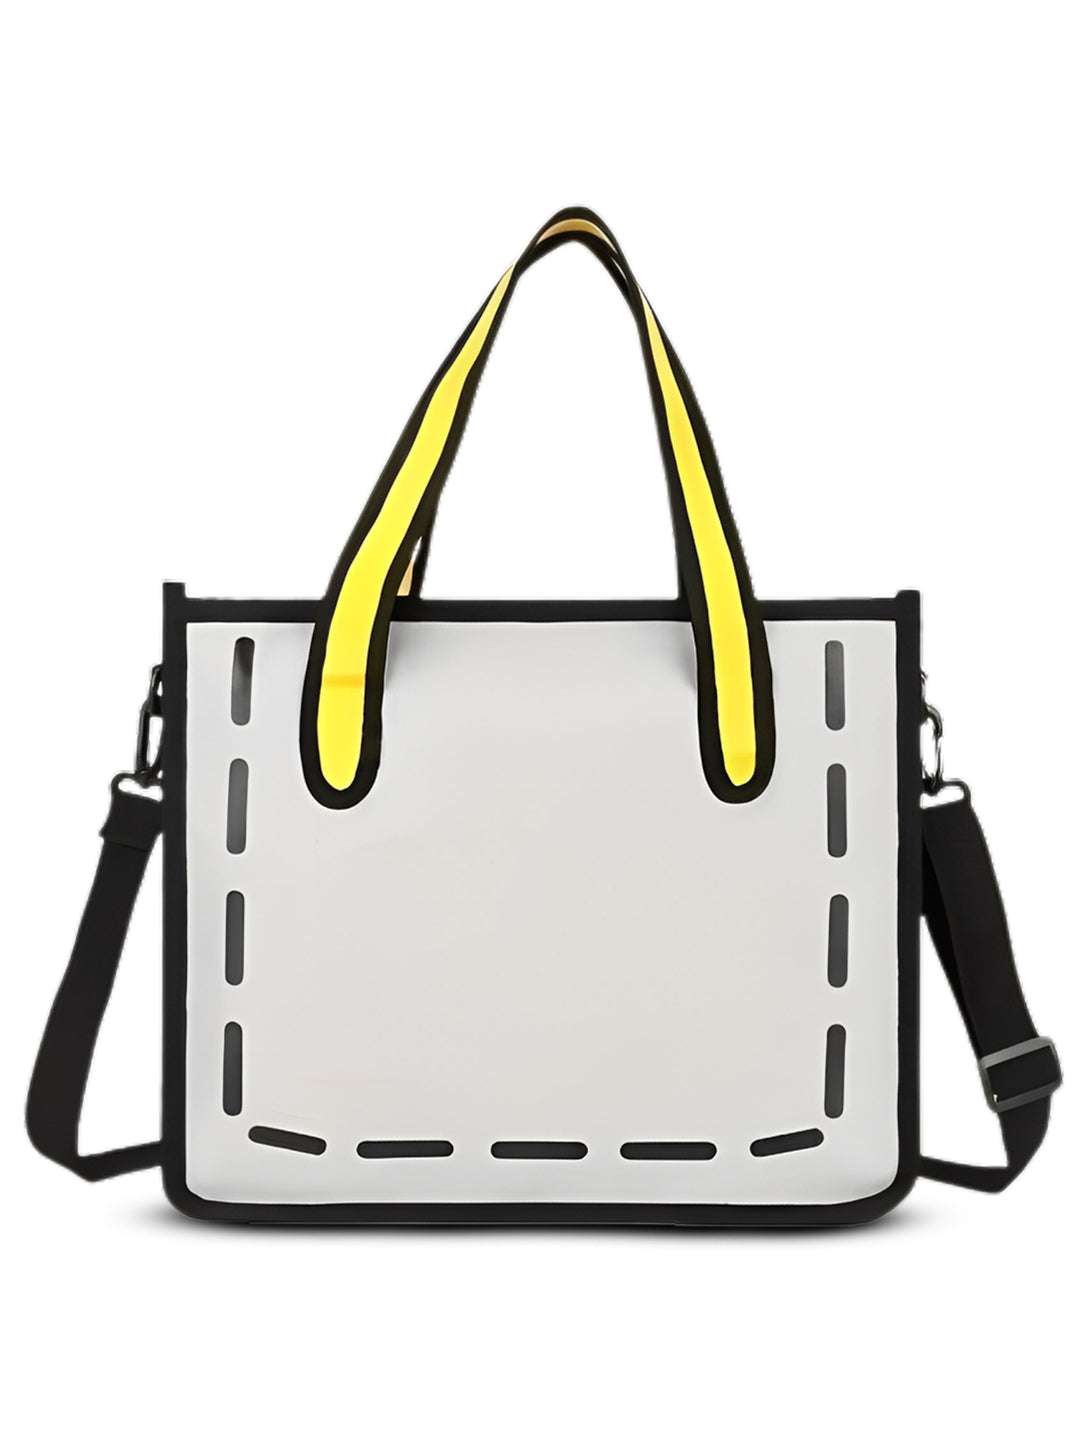 2d tote bag women handbag#color_grey